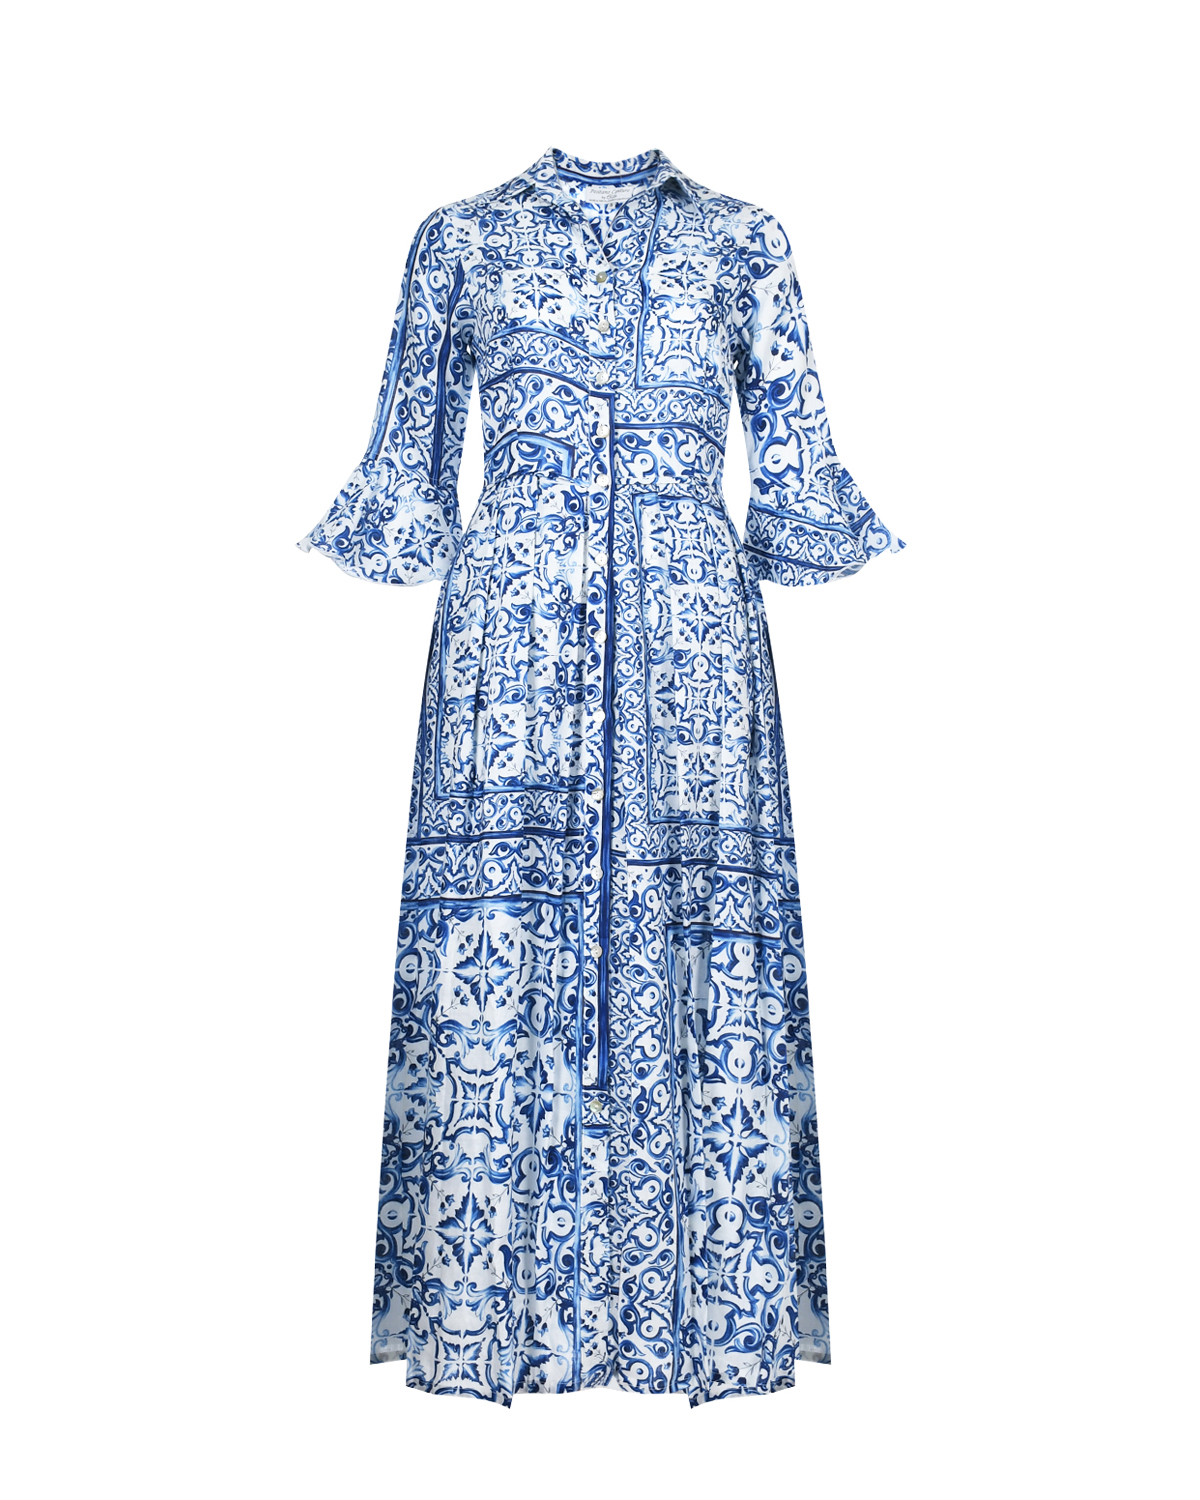 Платье льняное миди со сплошным принтом "Майолика" Positano Couture, размер 44, цвет нет цвета - фото 1